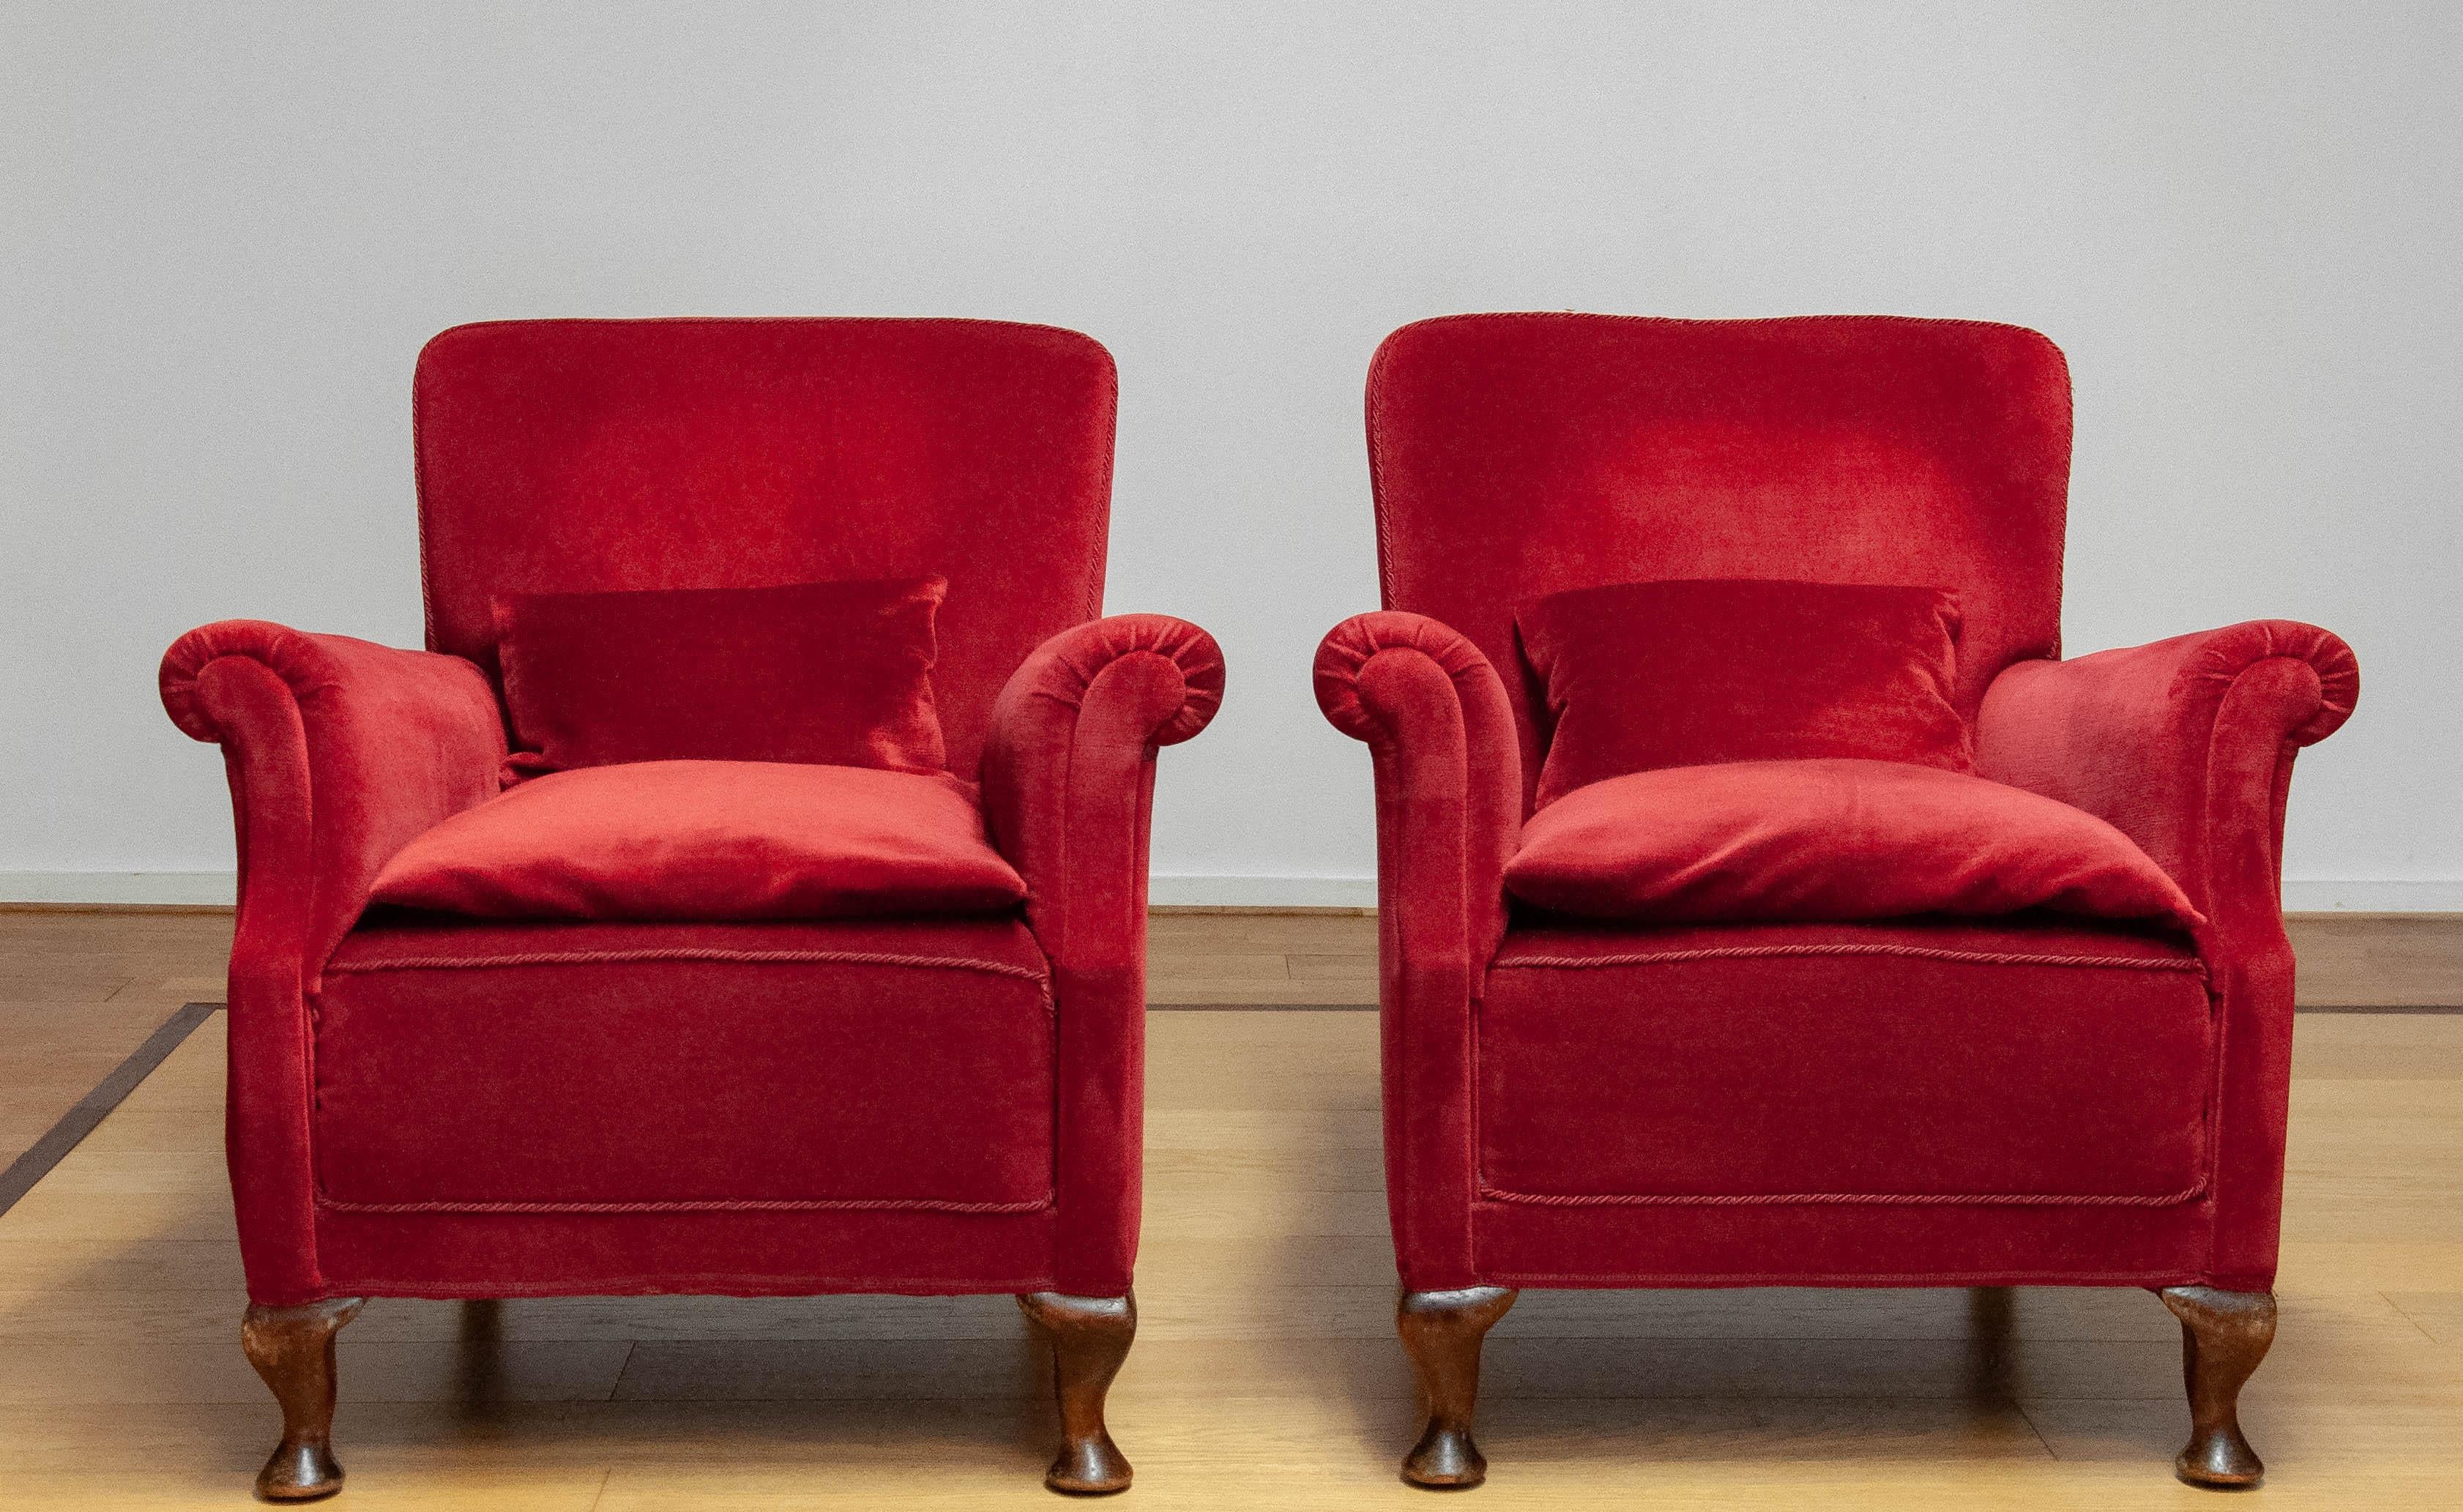 Paar schöne dänische Sessel aus den 1930er Jahren, die in den 1970er Jahren mit rotem Samt / Velours neu gepolstert wurden. Beide Stühle sind in sehr gutem und sauberem Zustand und sitzen sehr bequem. Gurtband und Federn sind alle in gutem